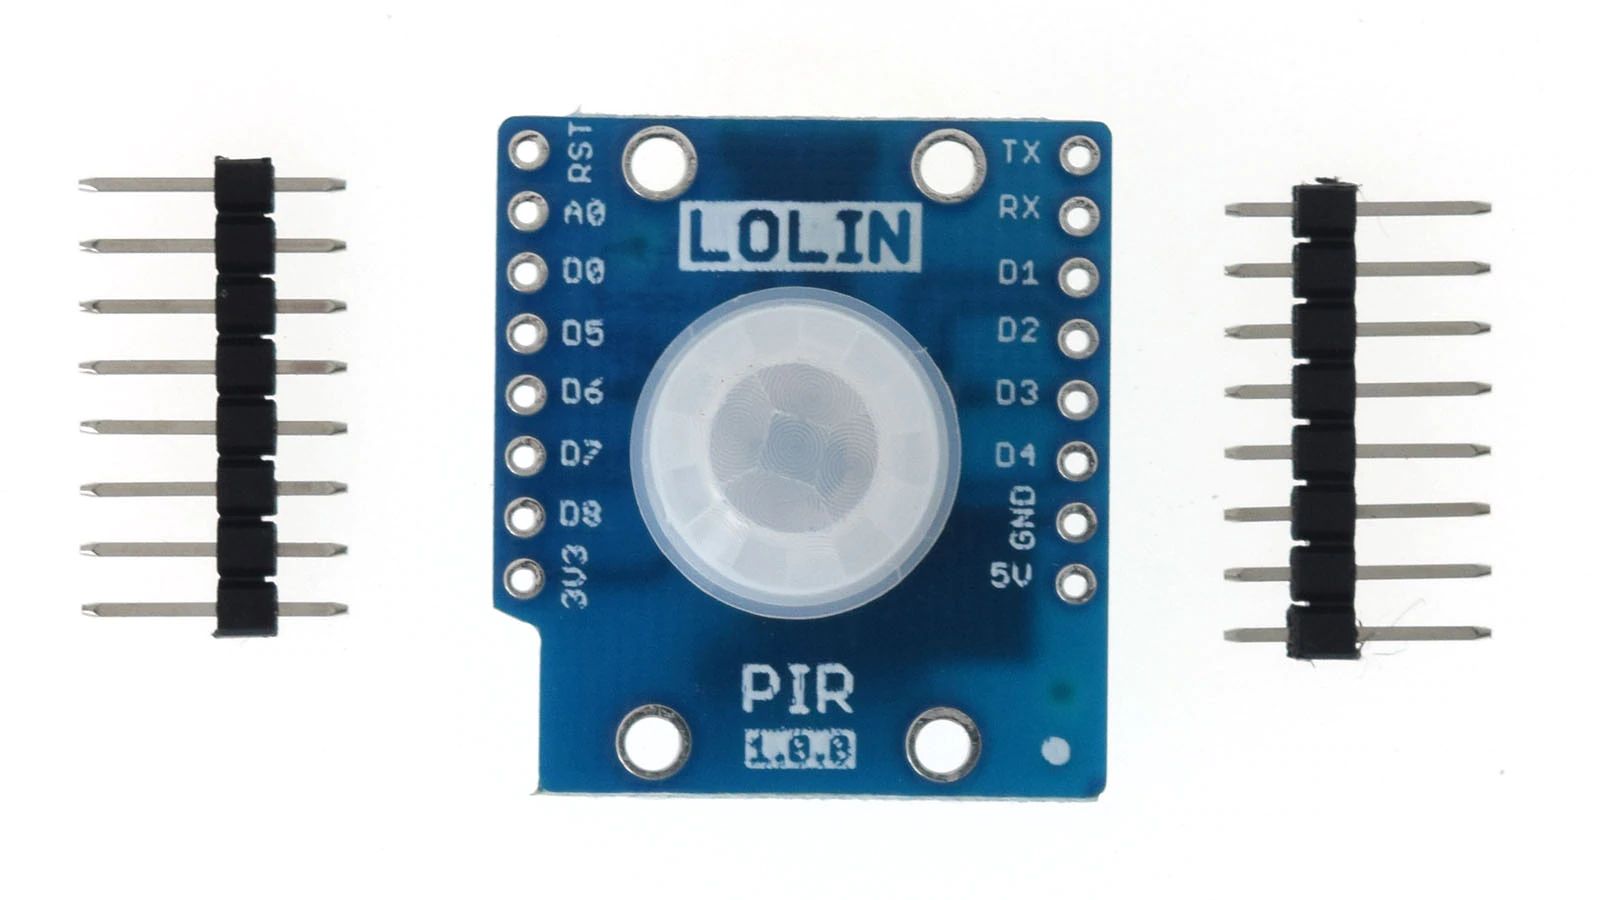 LOLIN D1 PIR Shield v1